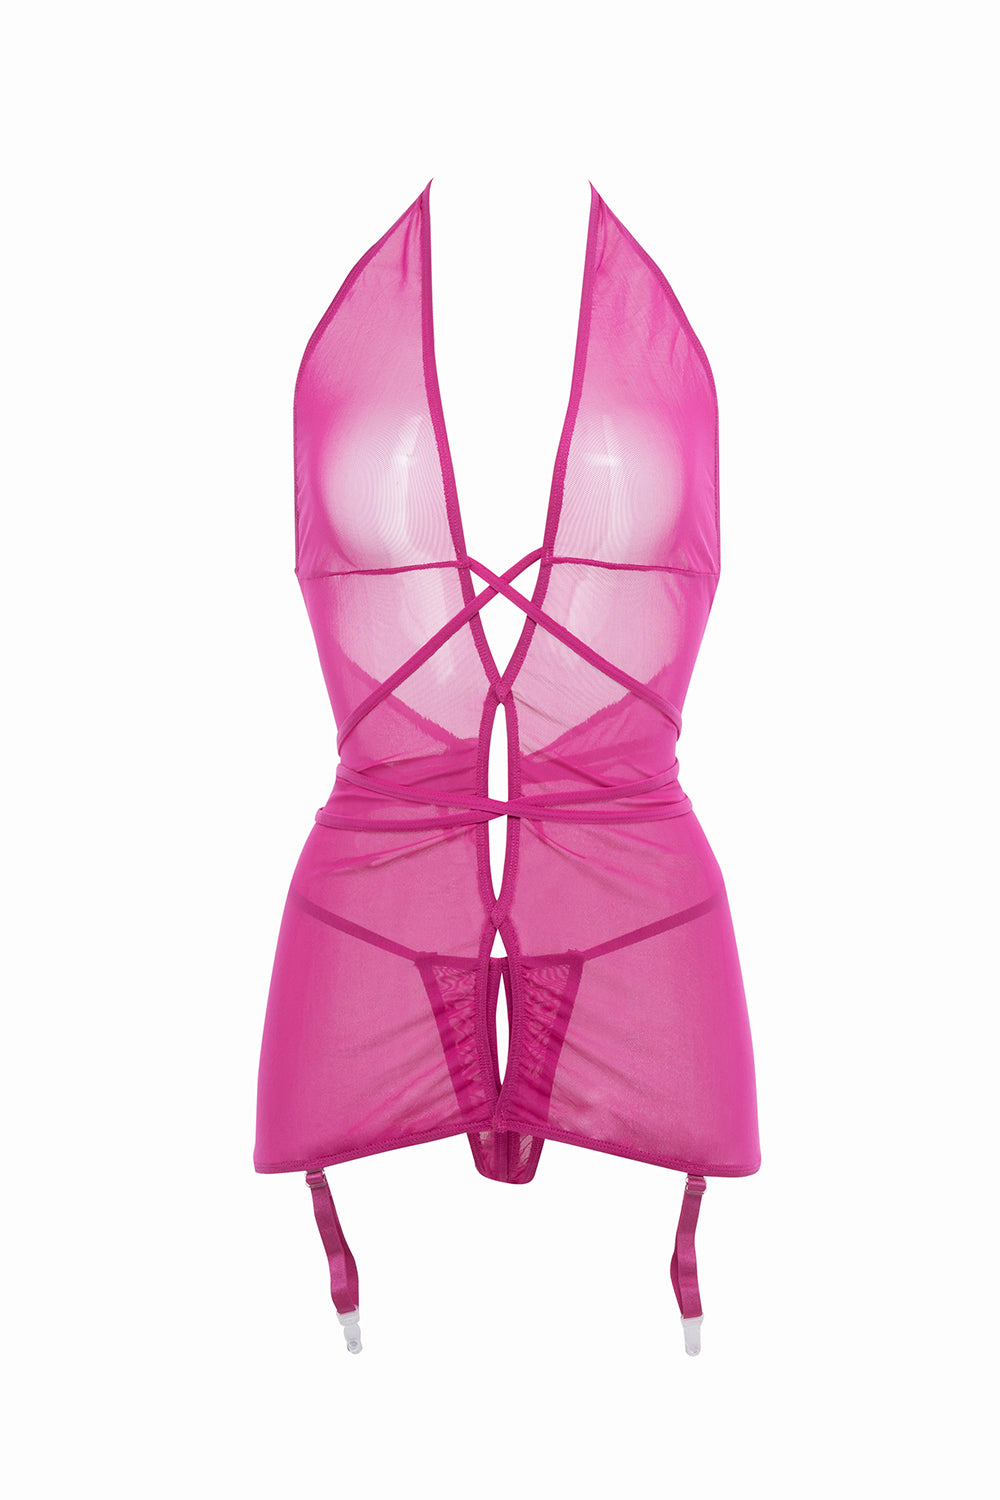 Allure Collection Savannah Sheer Mesh Garter Dress & Open Thong Hot Pink